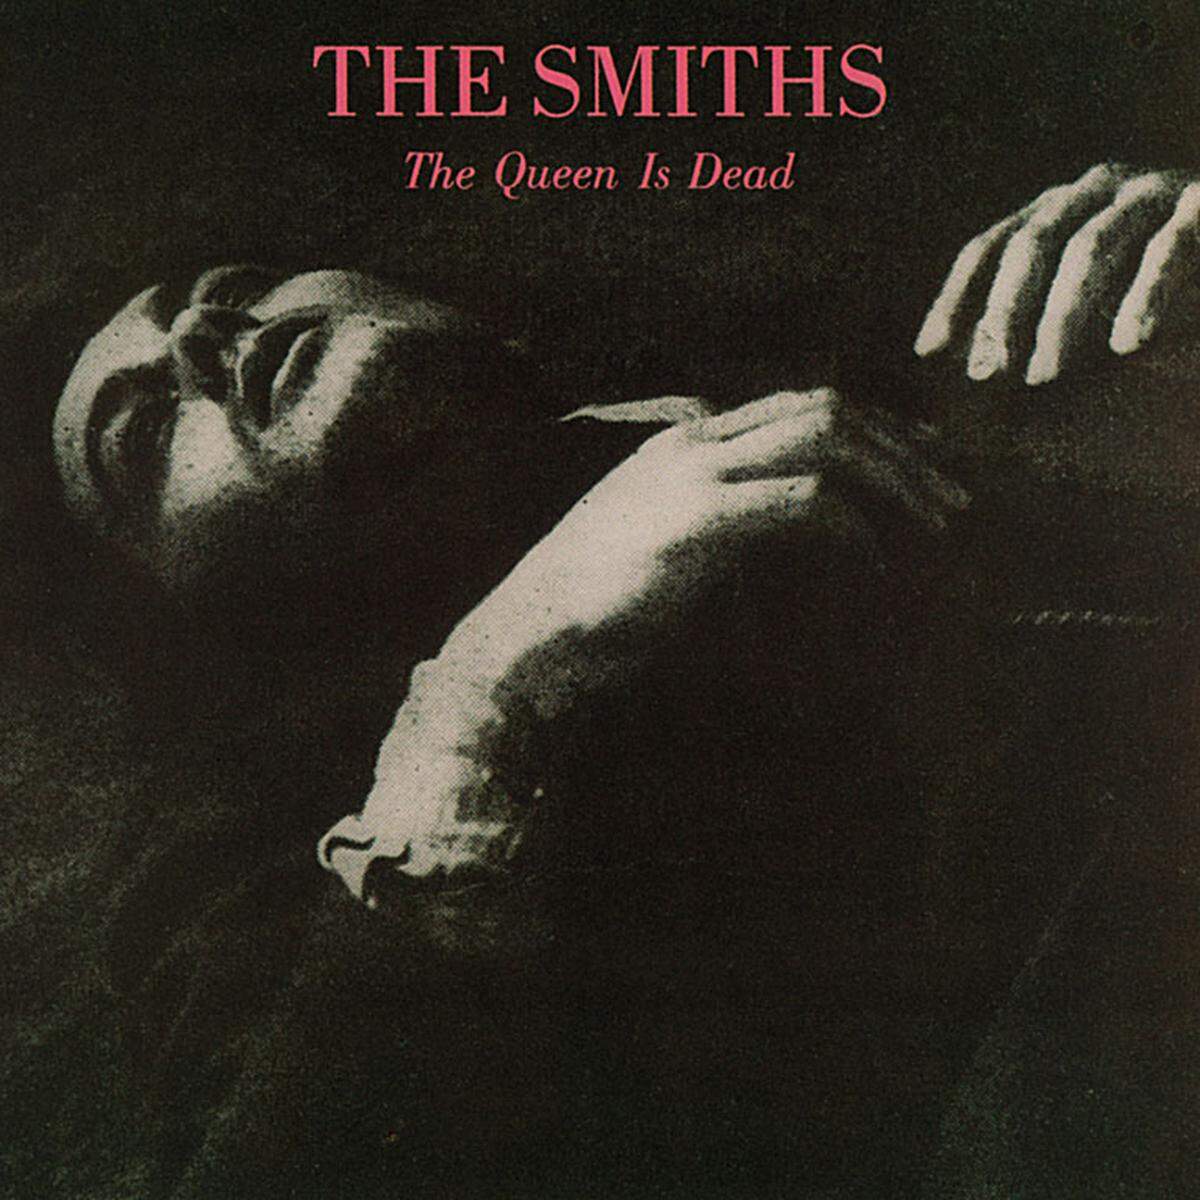 Vor fast 30 Jahren hieß es "The Queen is Dead" (1986). Morrisseys Ansichten für die Royalen haben sich nicht geändert. Unverändert ist retrospektiv auch die Qualität der Smiths-Platte.